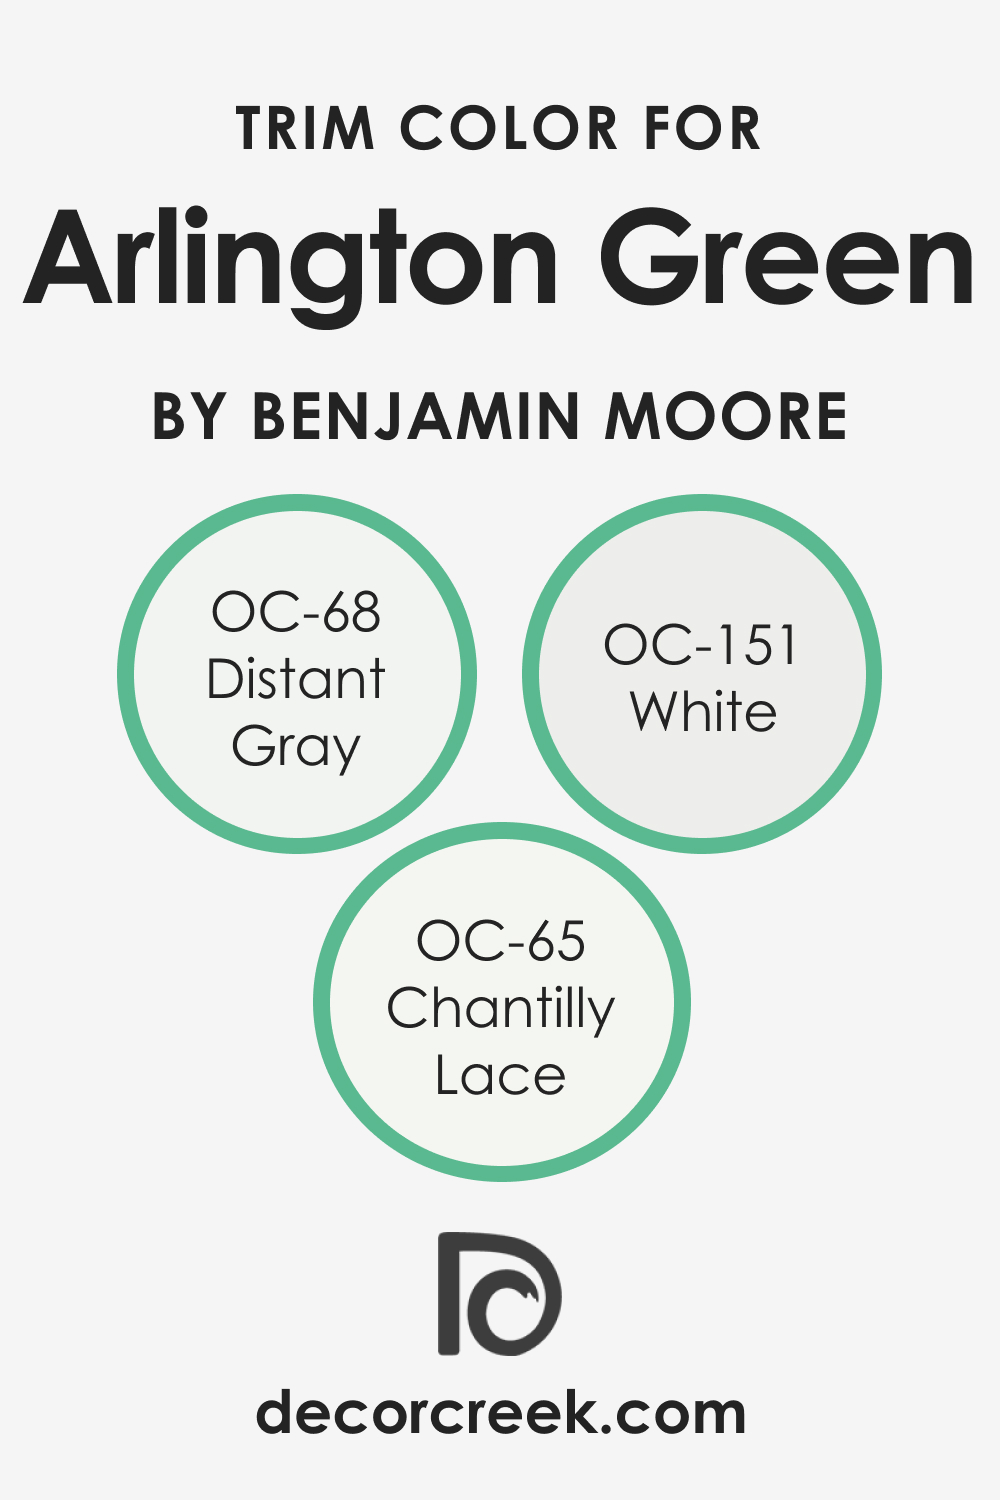 Trim Colors of Arlington Green 580